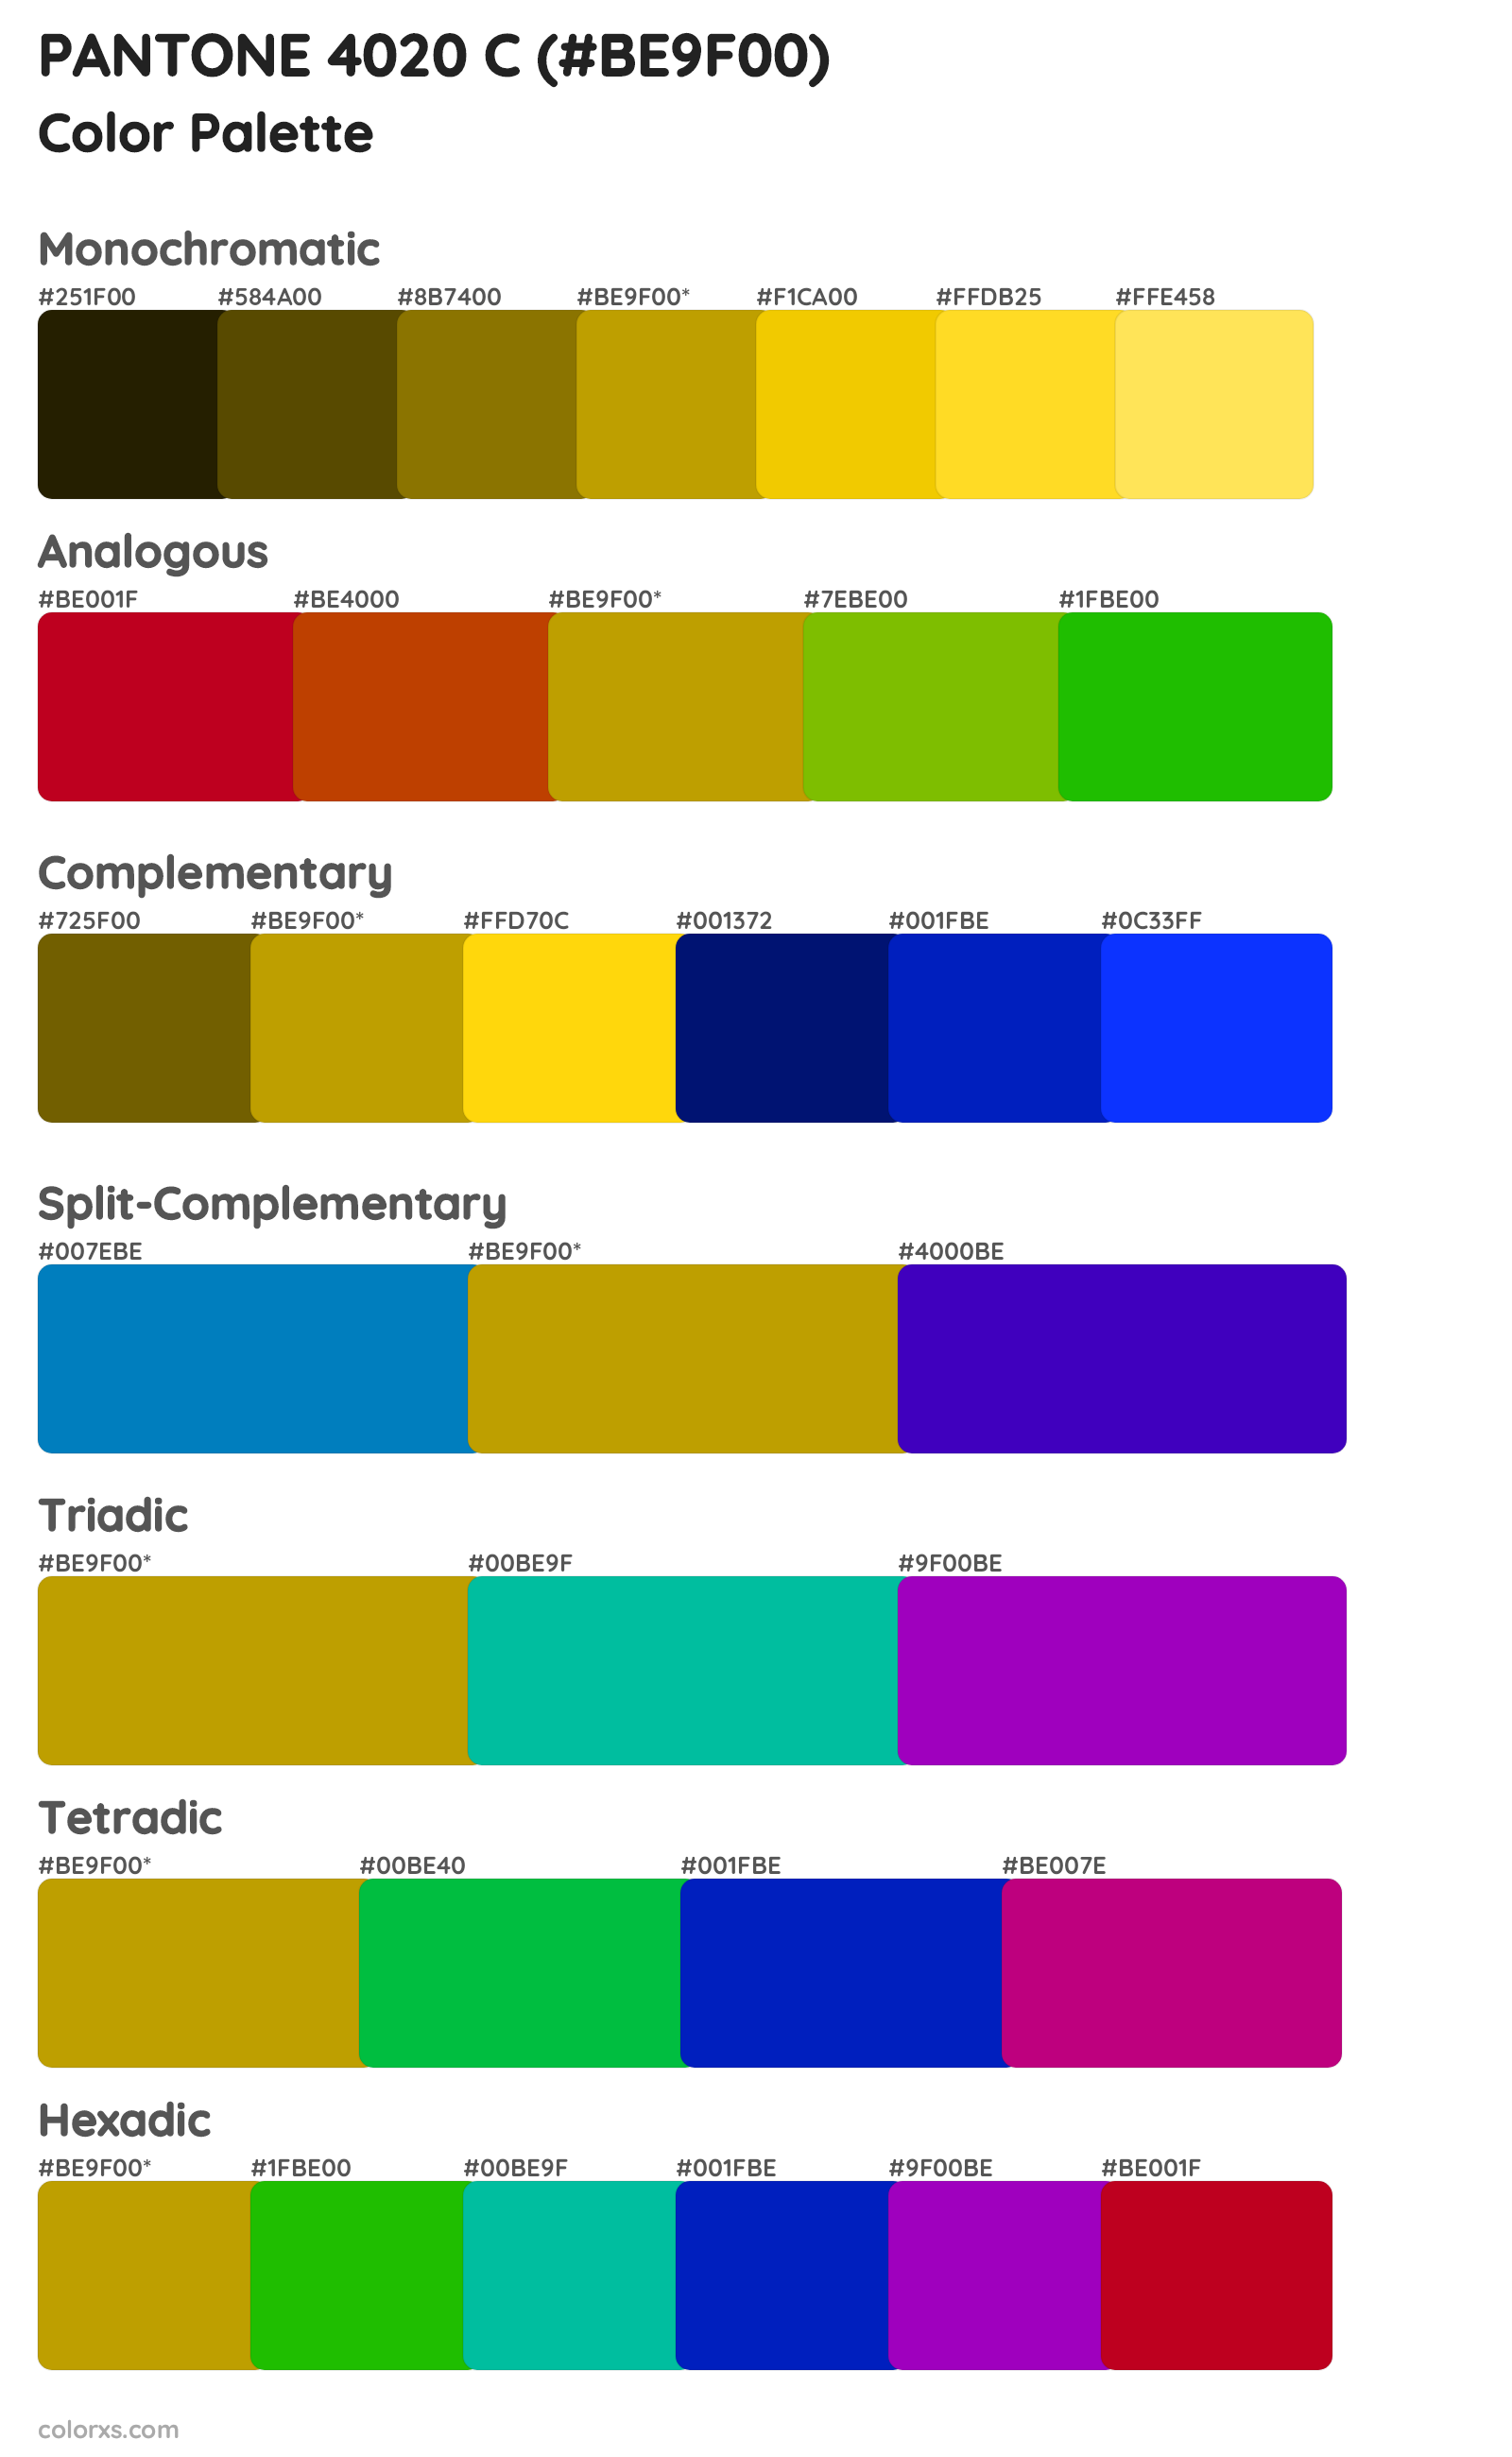 PANTONE 4020 C Color Scheme Palettes